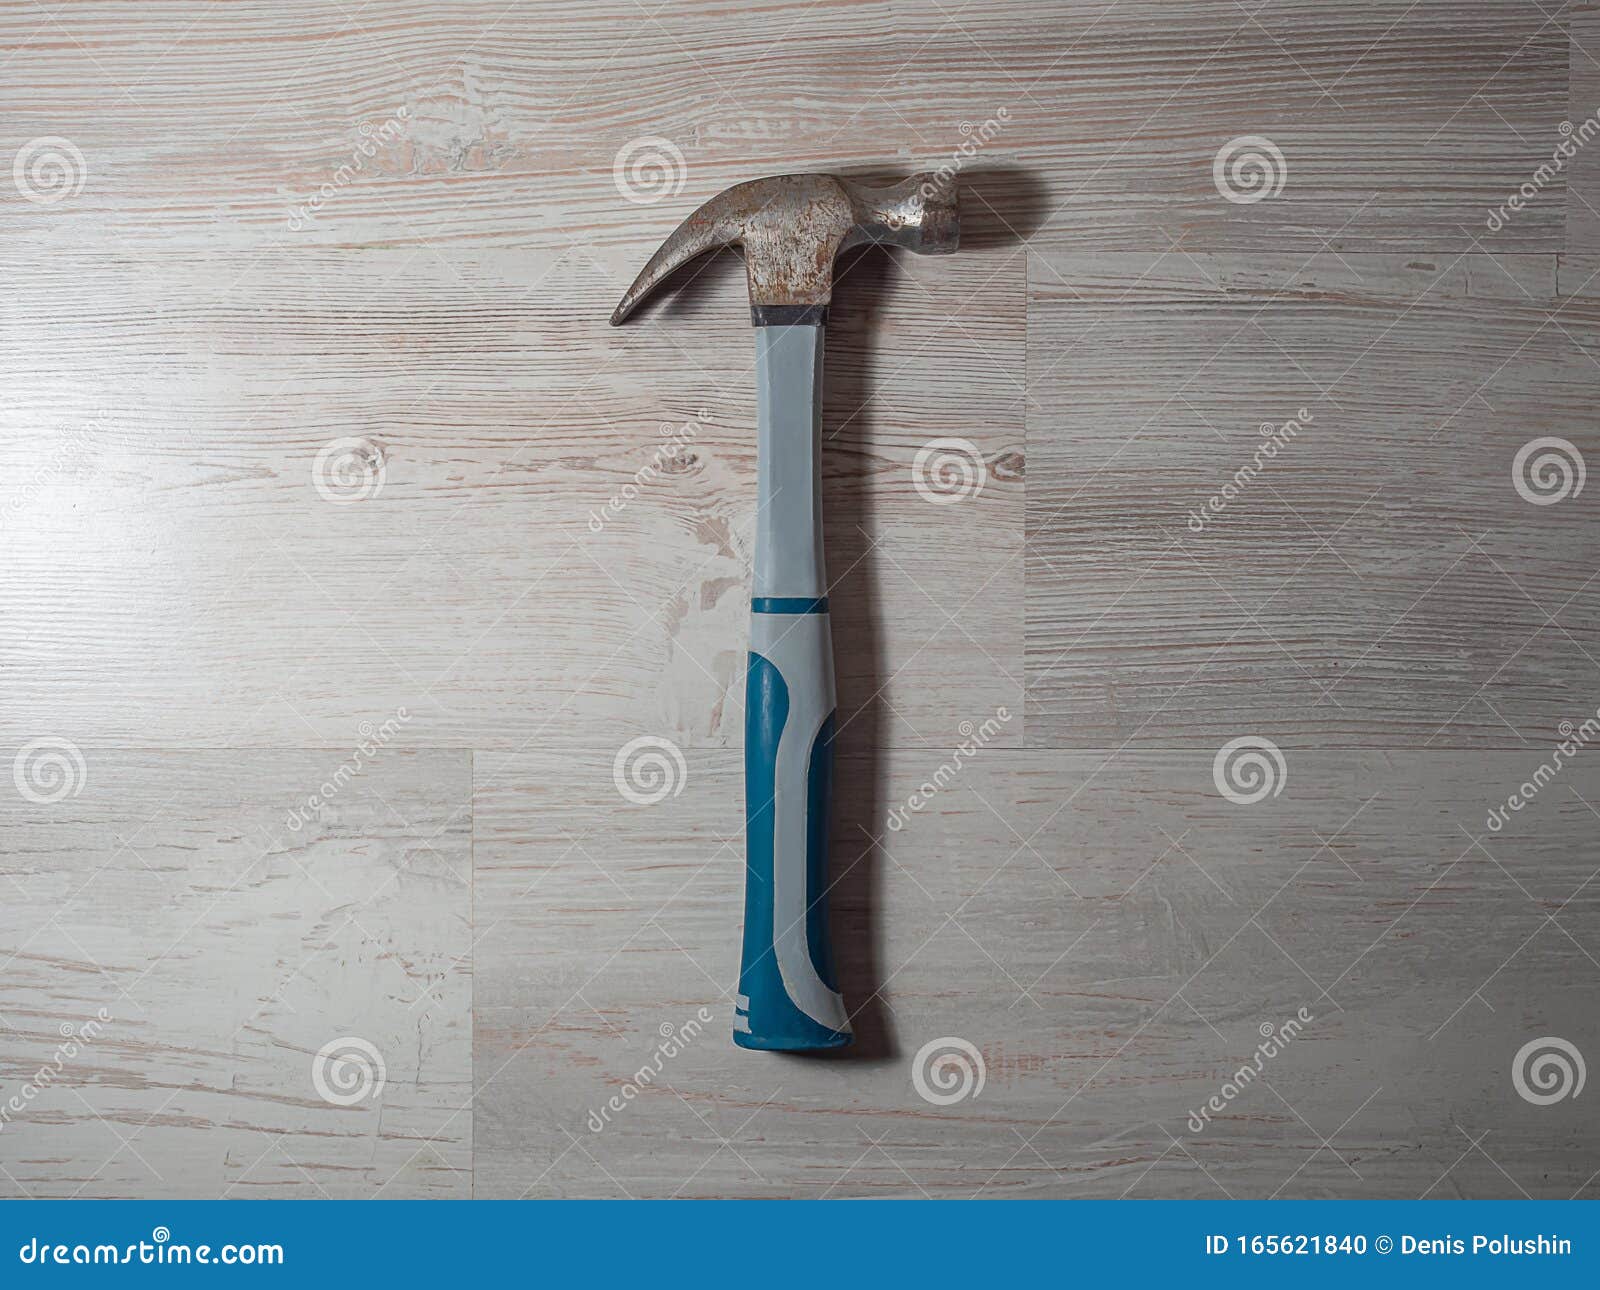 Martillo de construcción sobre el suelo Un viejo martillo de hierro oxidado gris de color azul se encuentra sobre un fondo claro de madera, trabajando, suelo, reparación, golpe